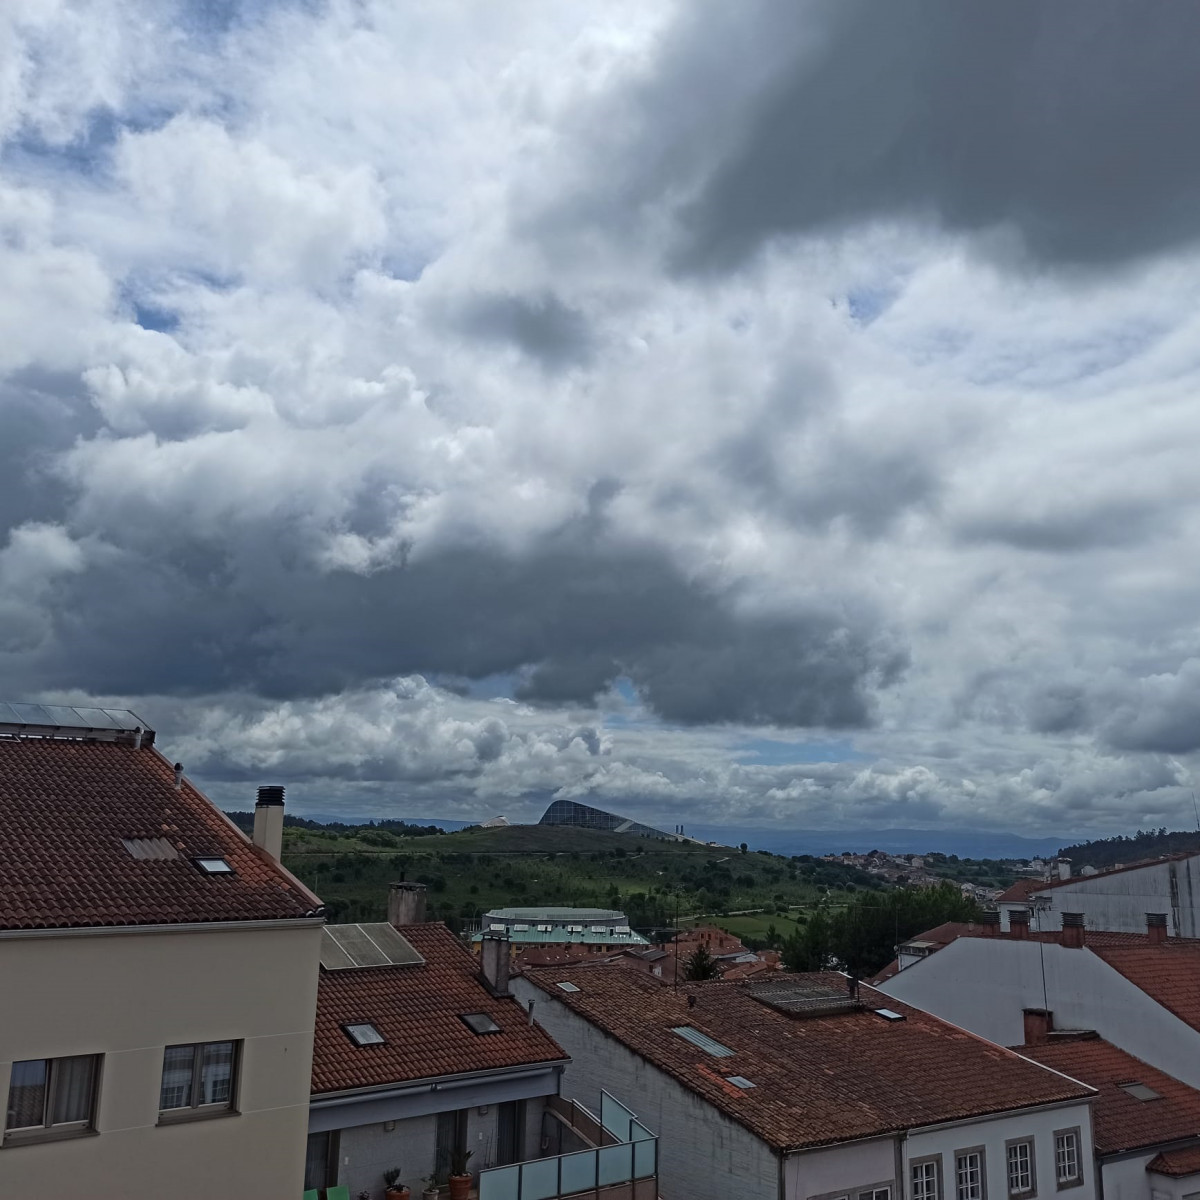 Jornada de nubes y claros en Santiago de Compostela, con chubascos intermitentes